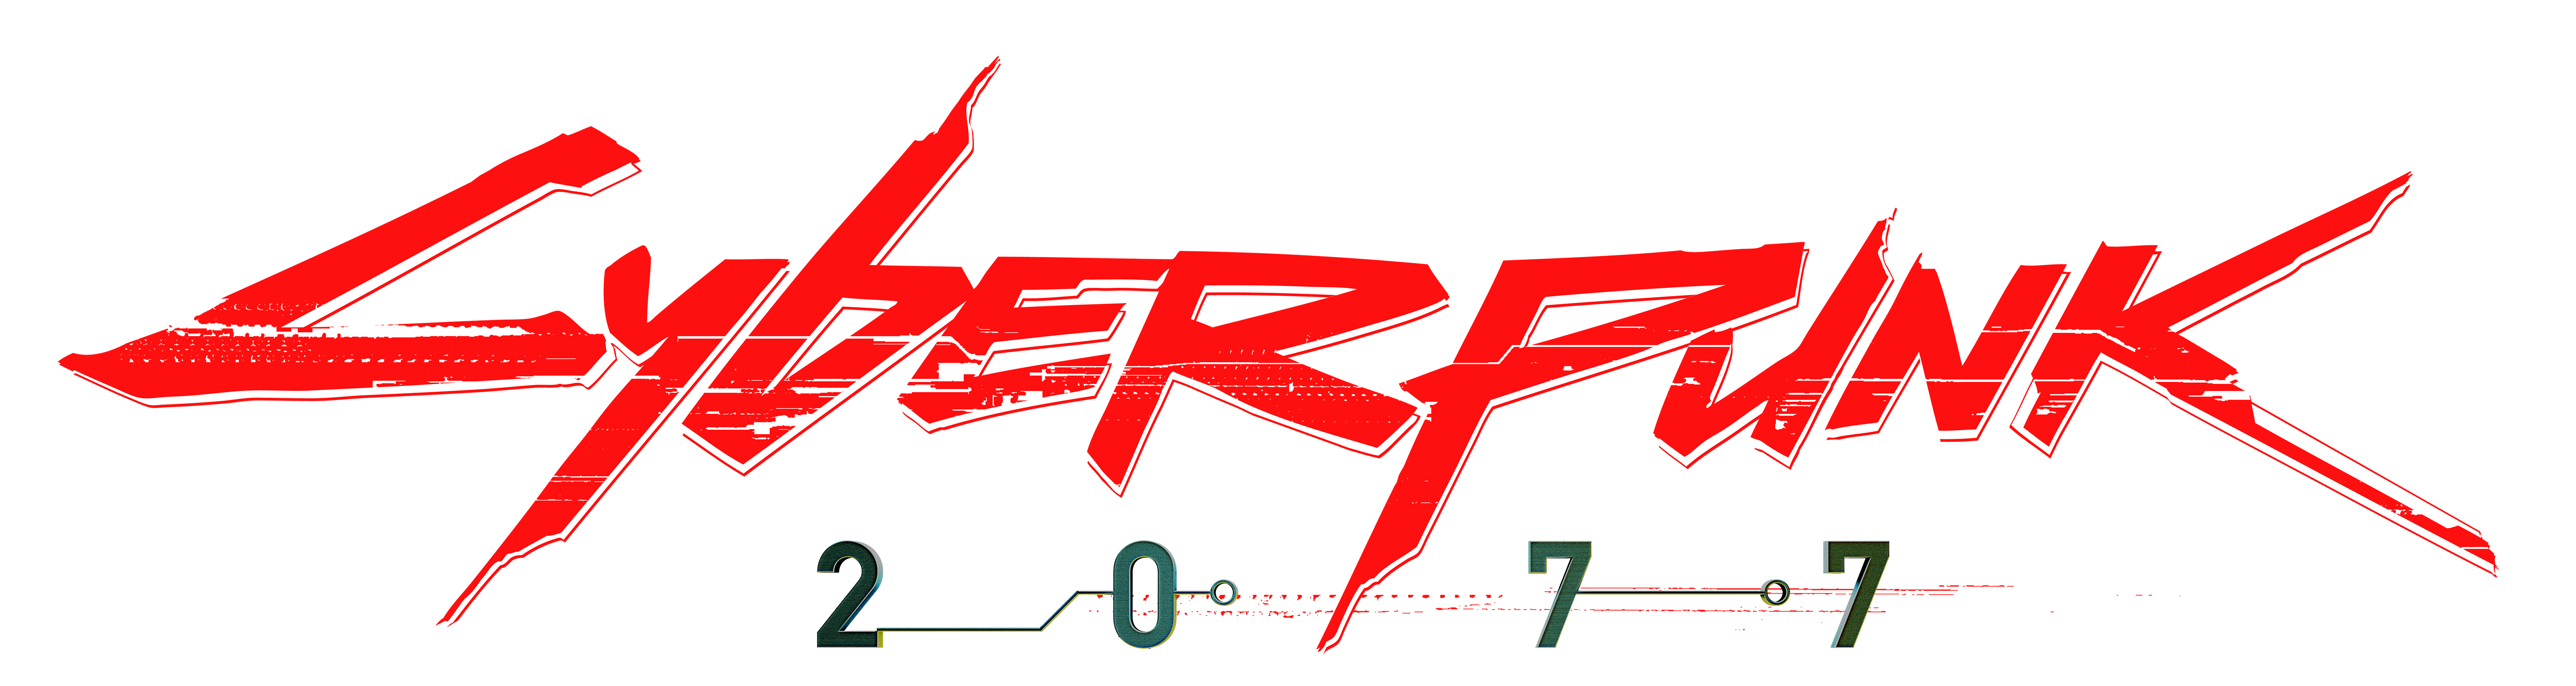 Militech cyberpunk logo фото 112